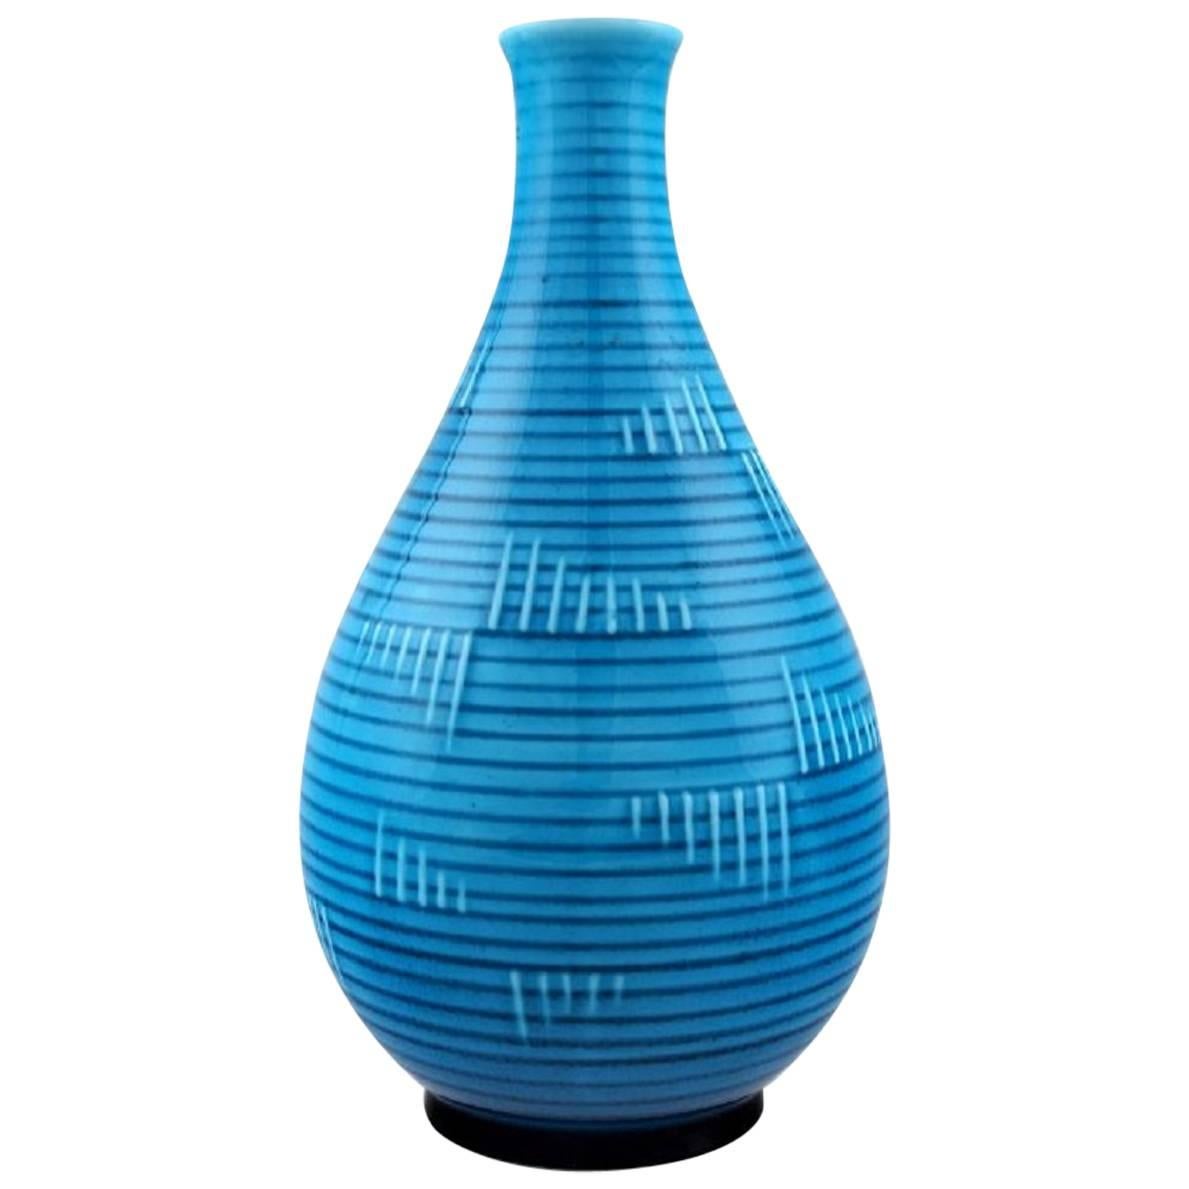 B & G (Bing & Grondahl) Art deco turquoise vase in porcelain.  1920s.